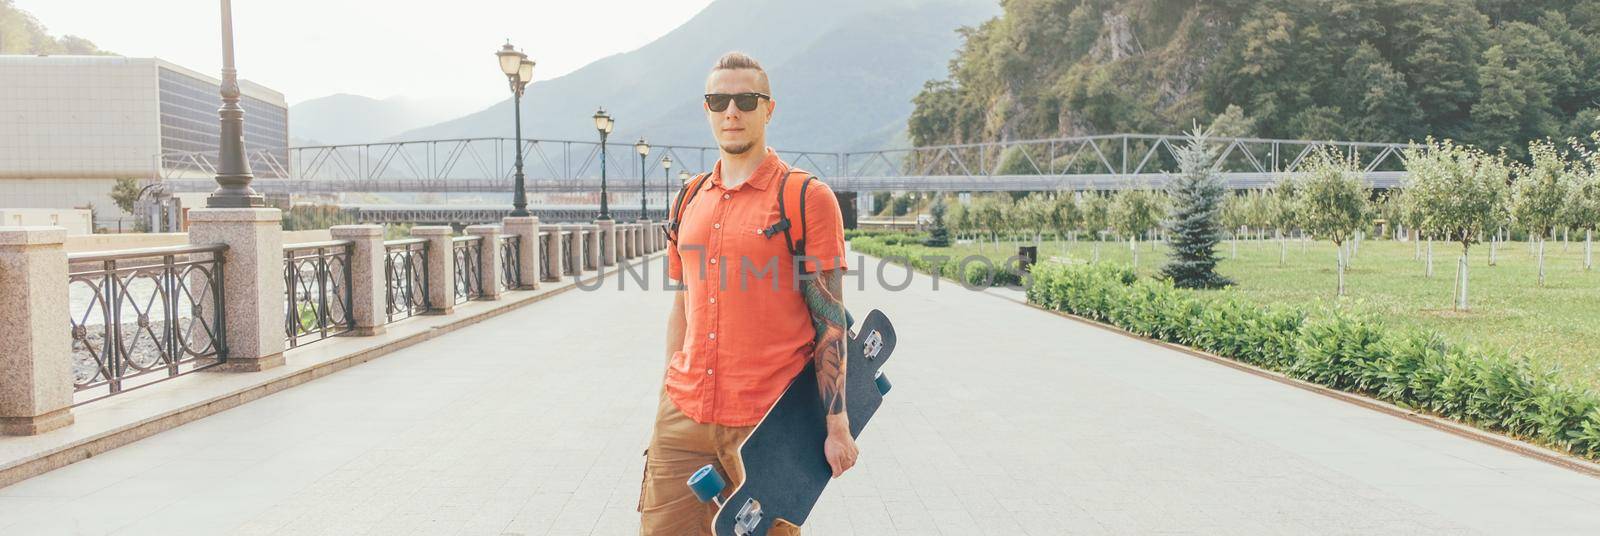 Street style tattooed guy in sunglasses walking with longboard in summer park.